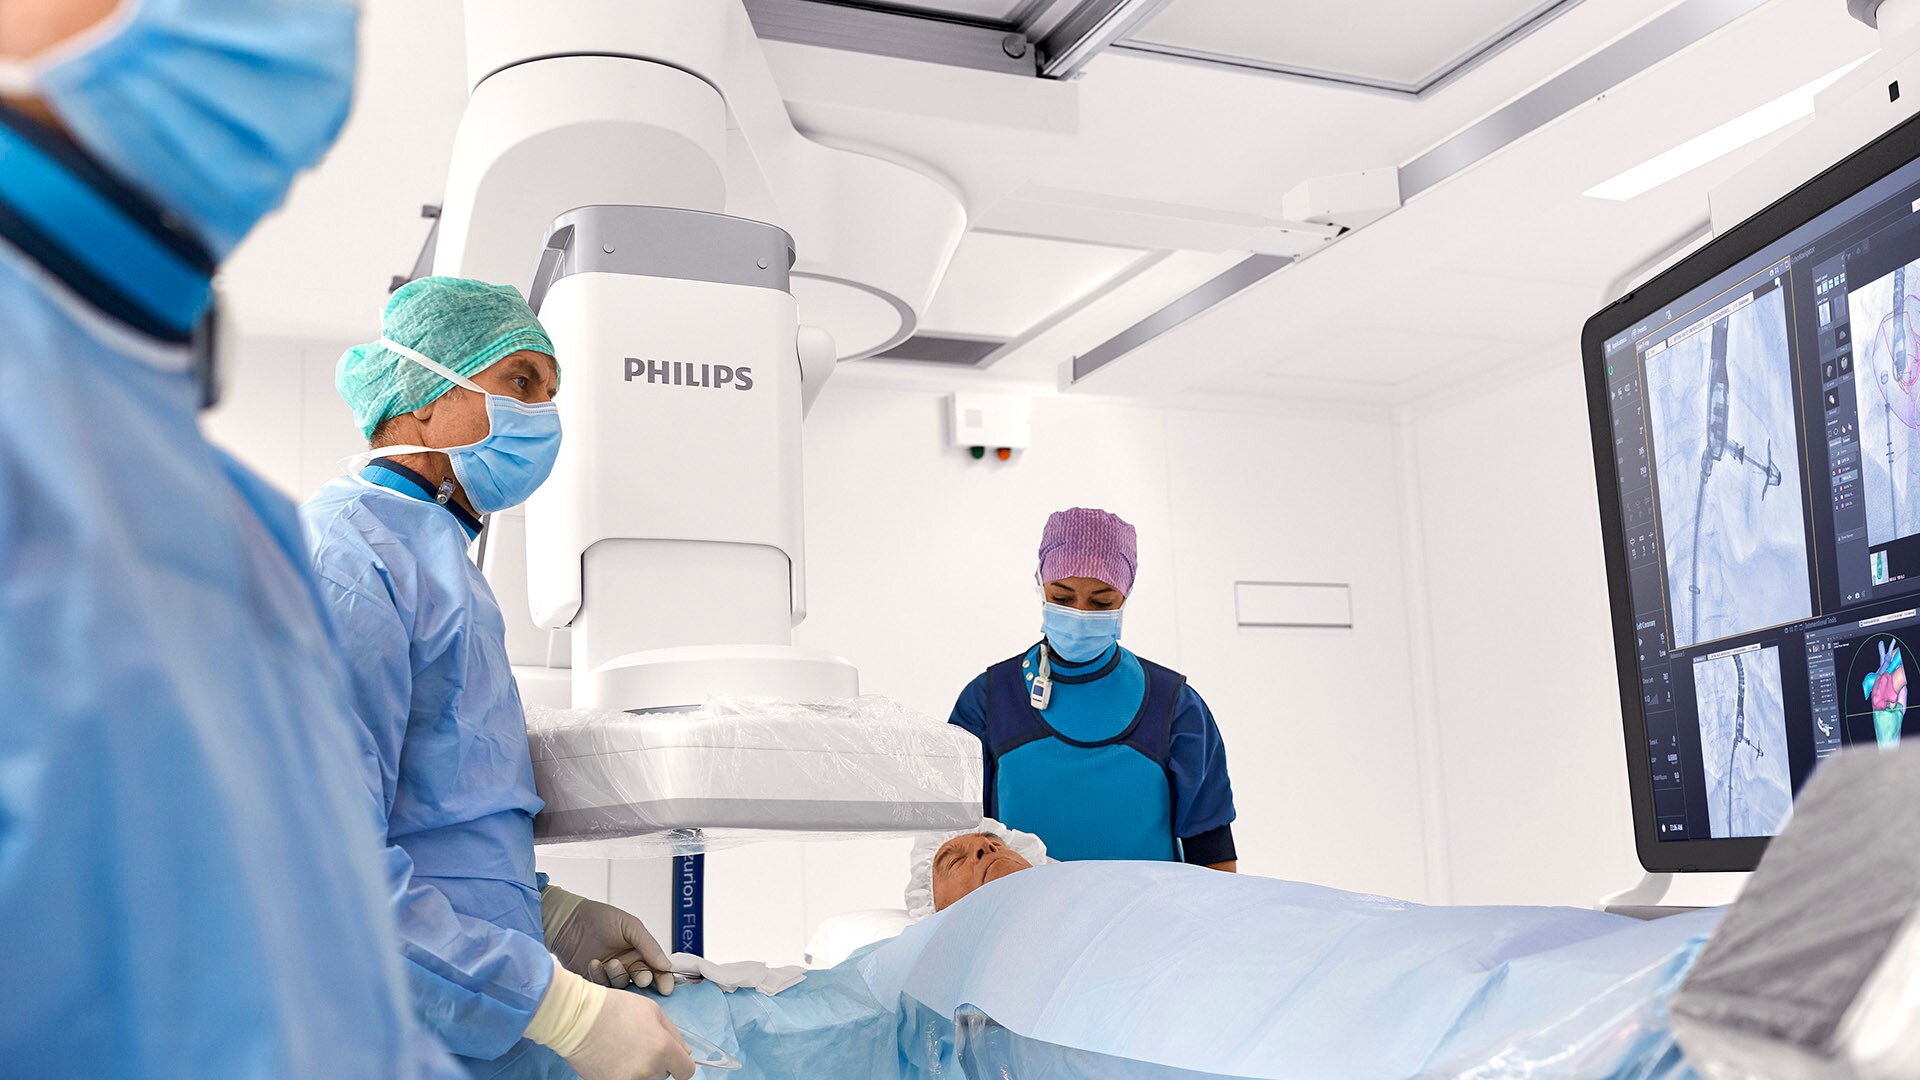 Philips entreprise de technologie médicale la plus innovante